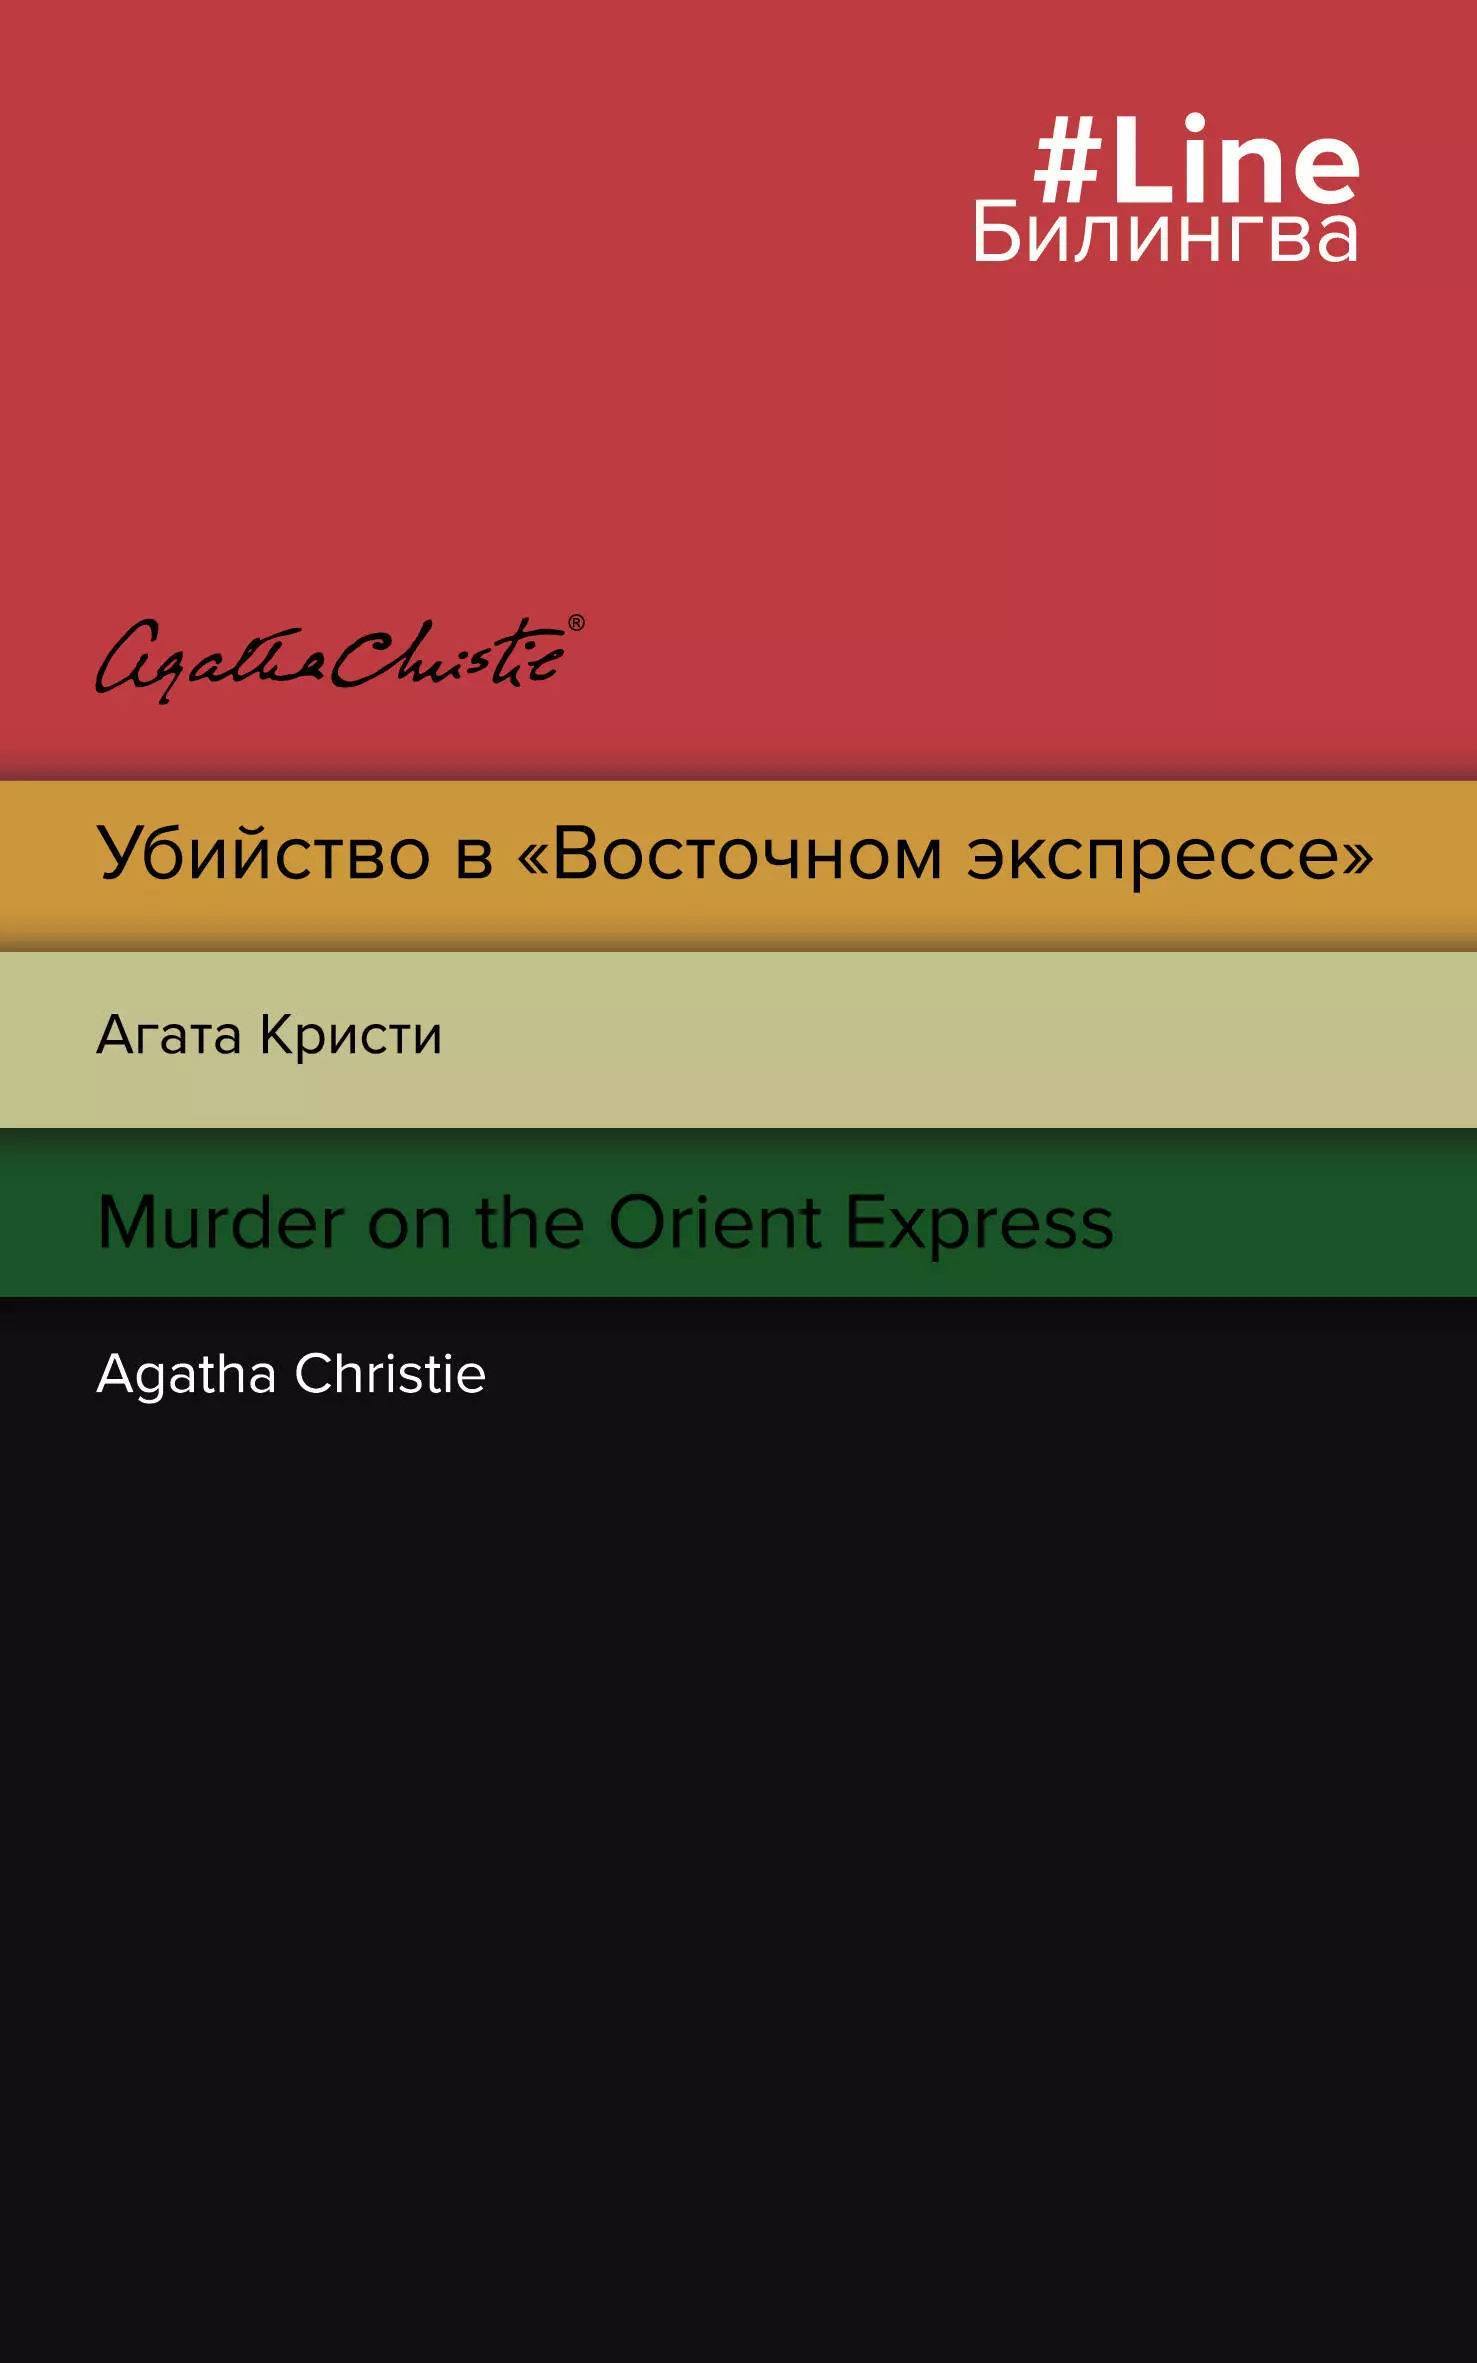 Убийство в Восточном экспрессе / Murder on the Orient Express убийство в восточном экспрессе murder on the orient express кристи а